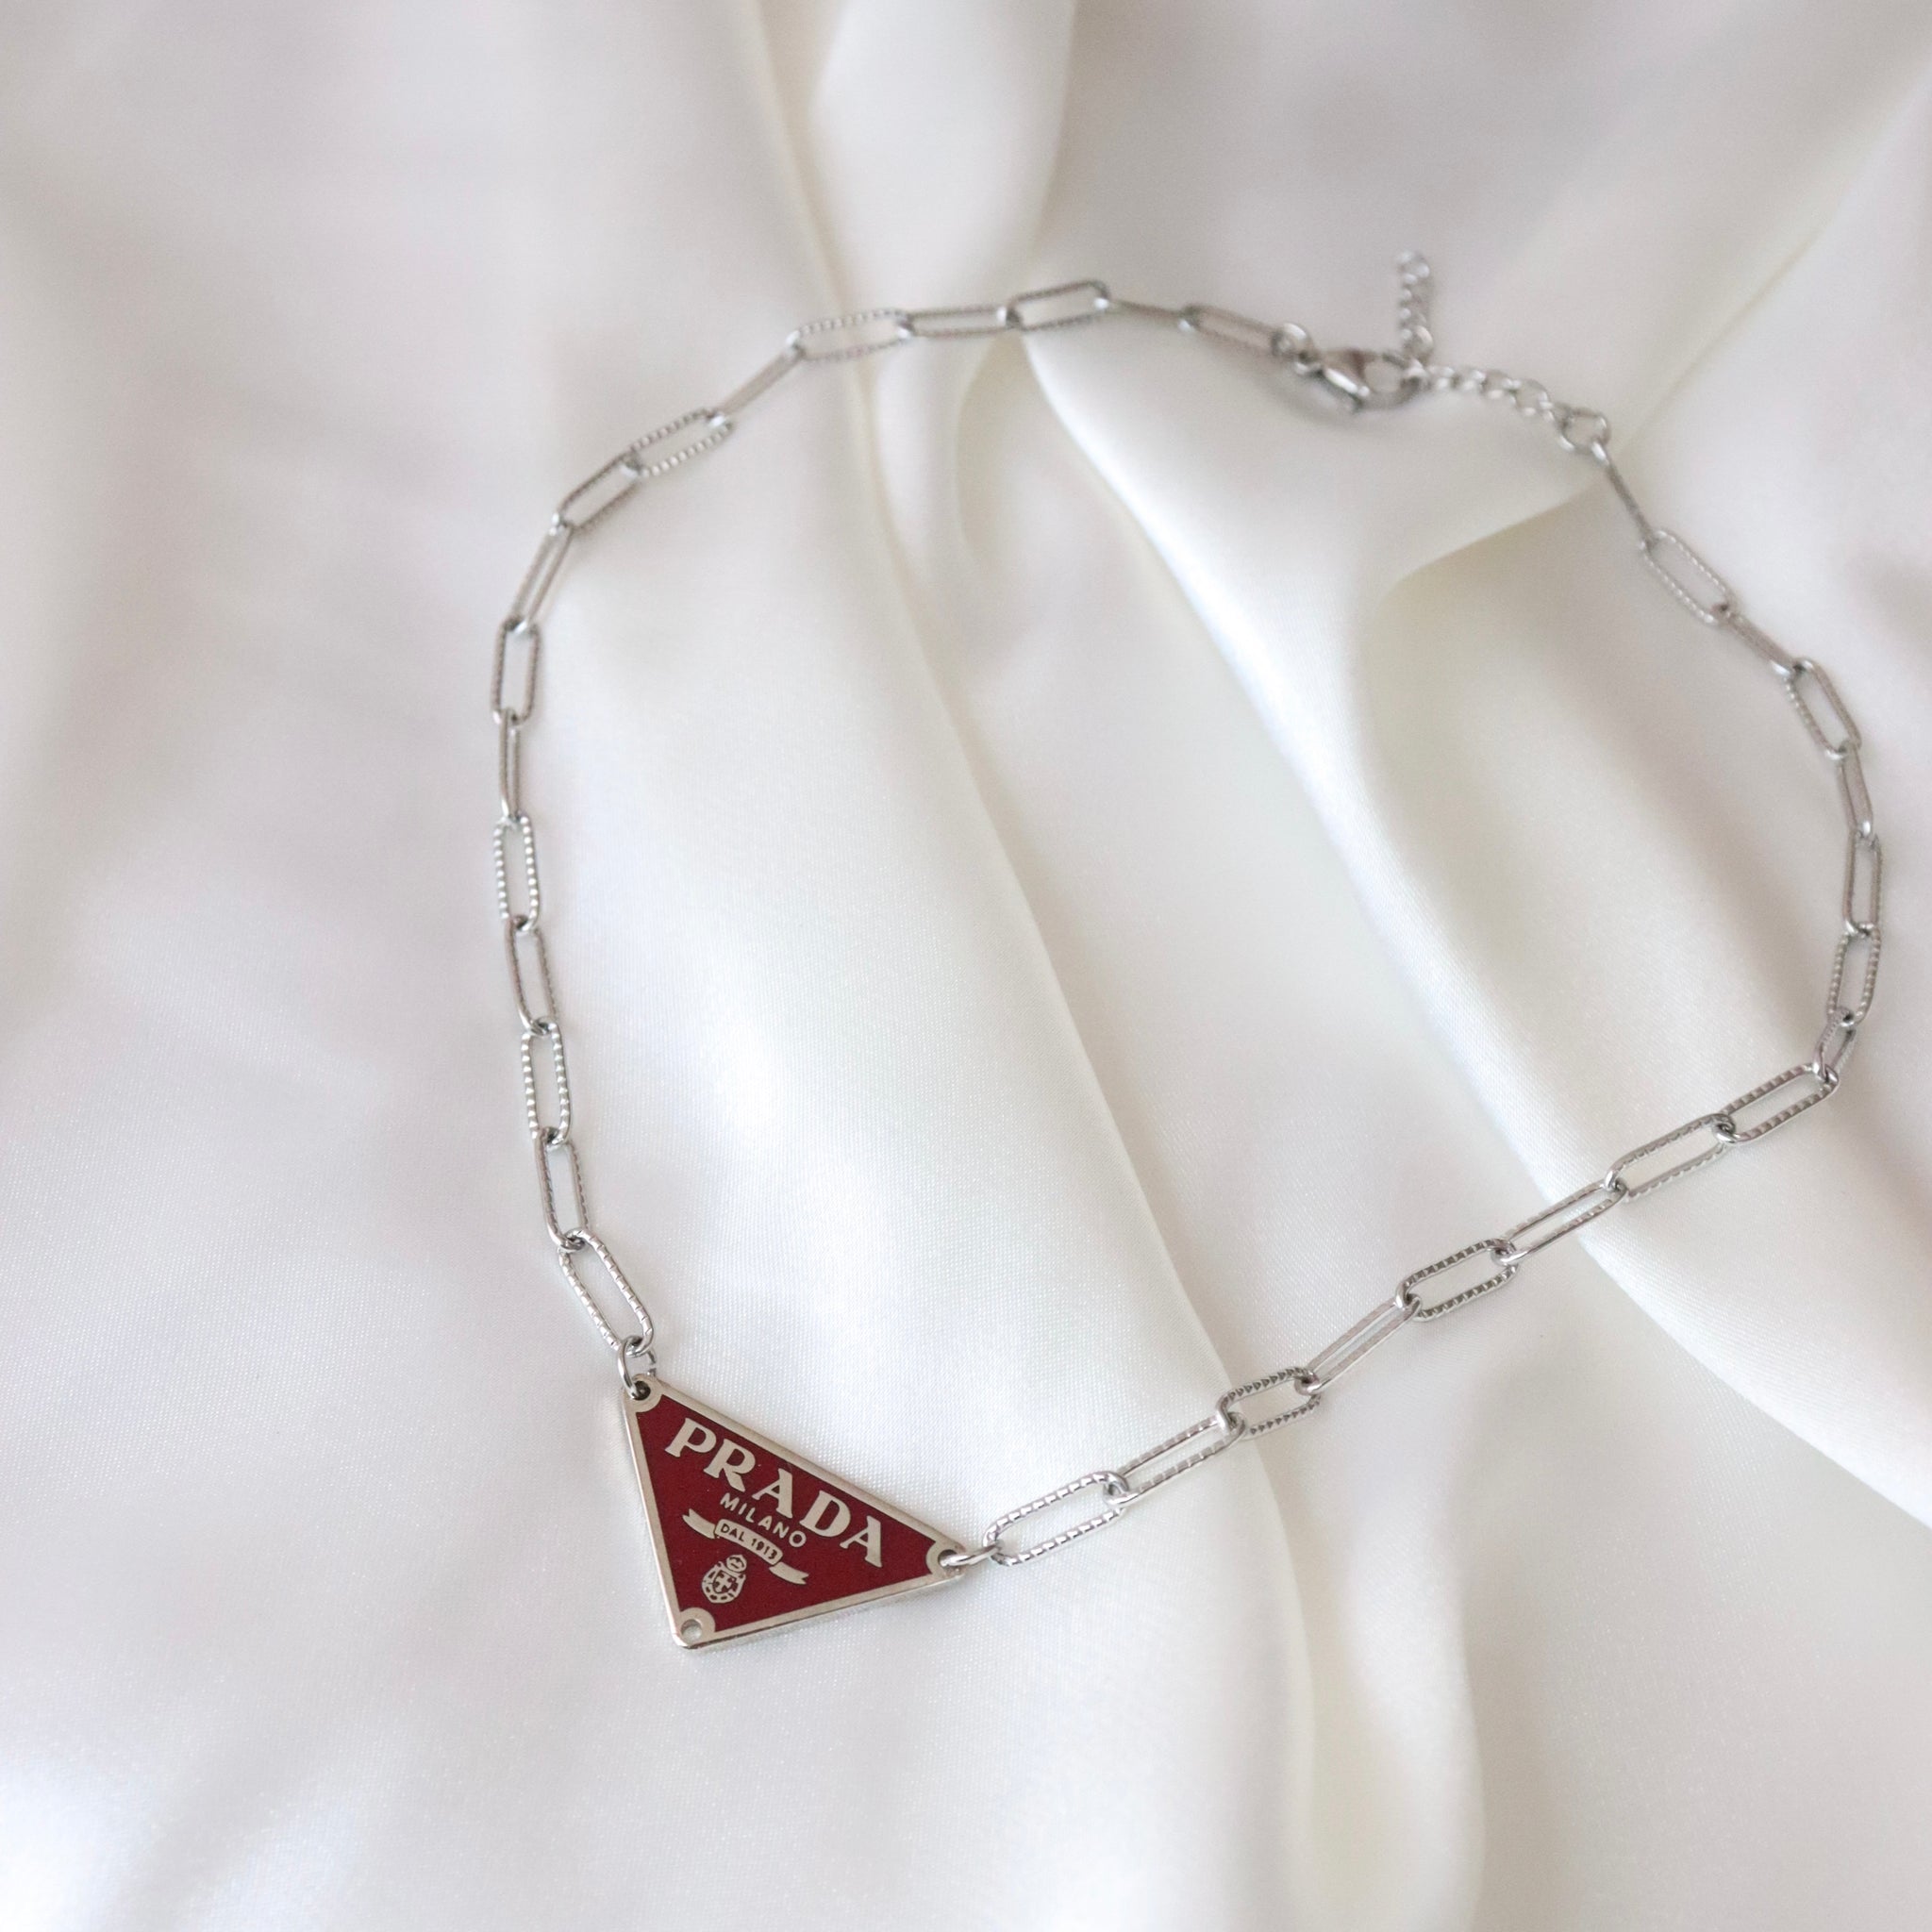 Rework Vintage Red Prada Emblem on Necklace – Relic the Label